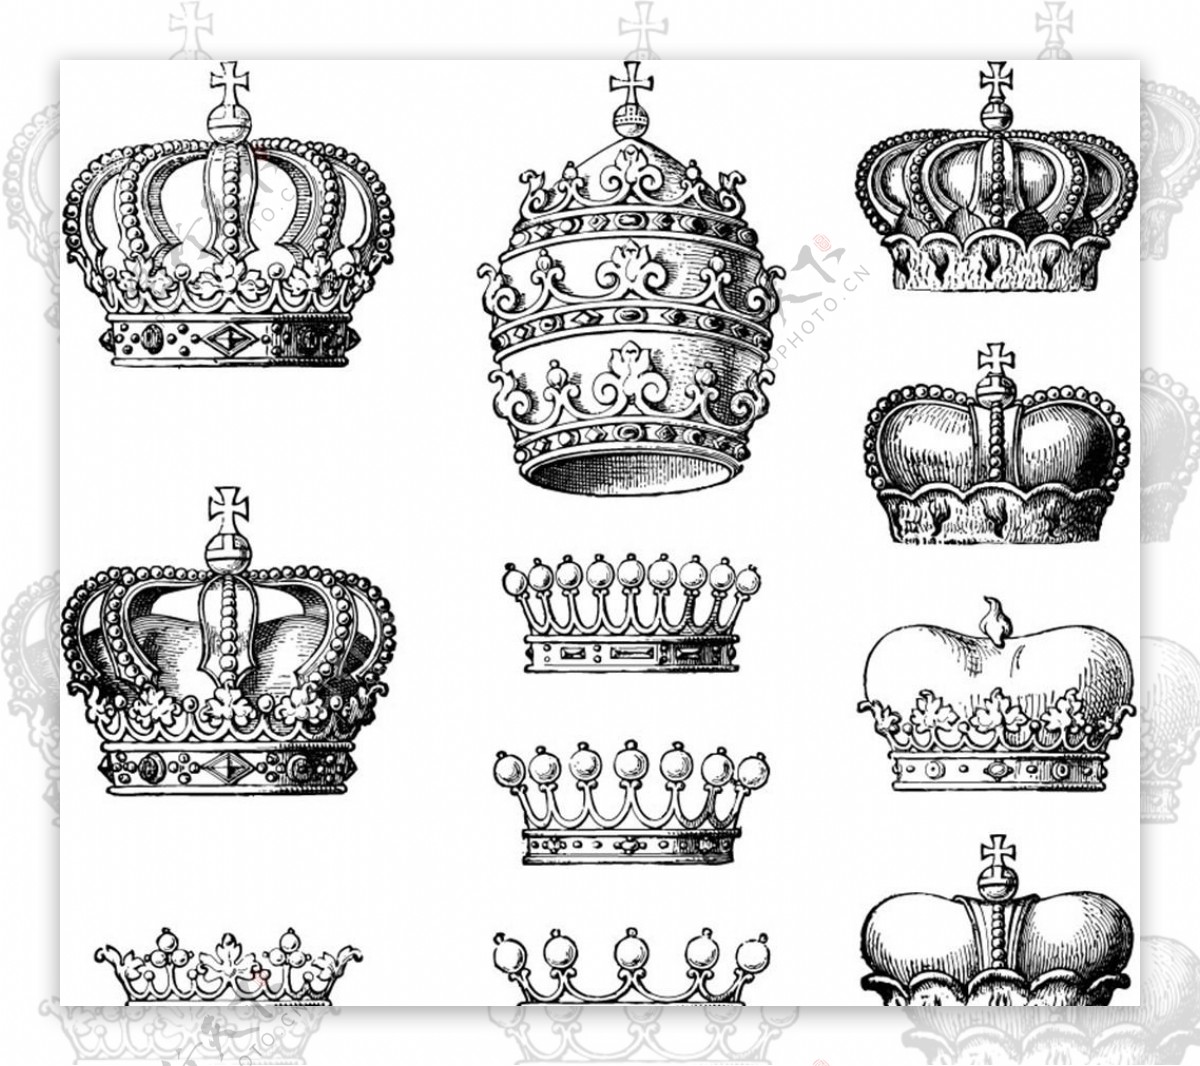 复古皇冠设计矢量素材